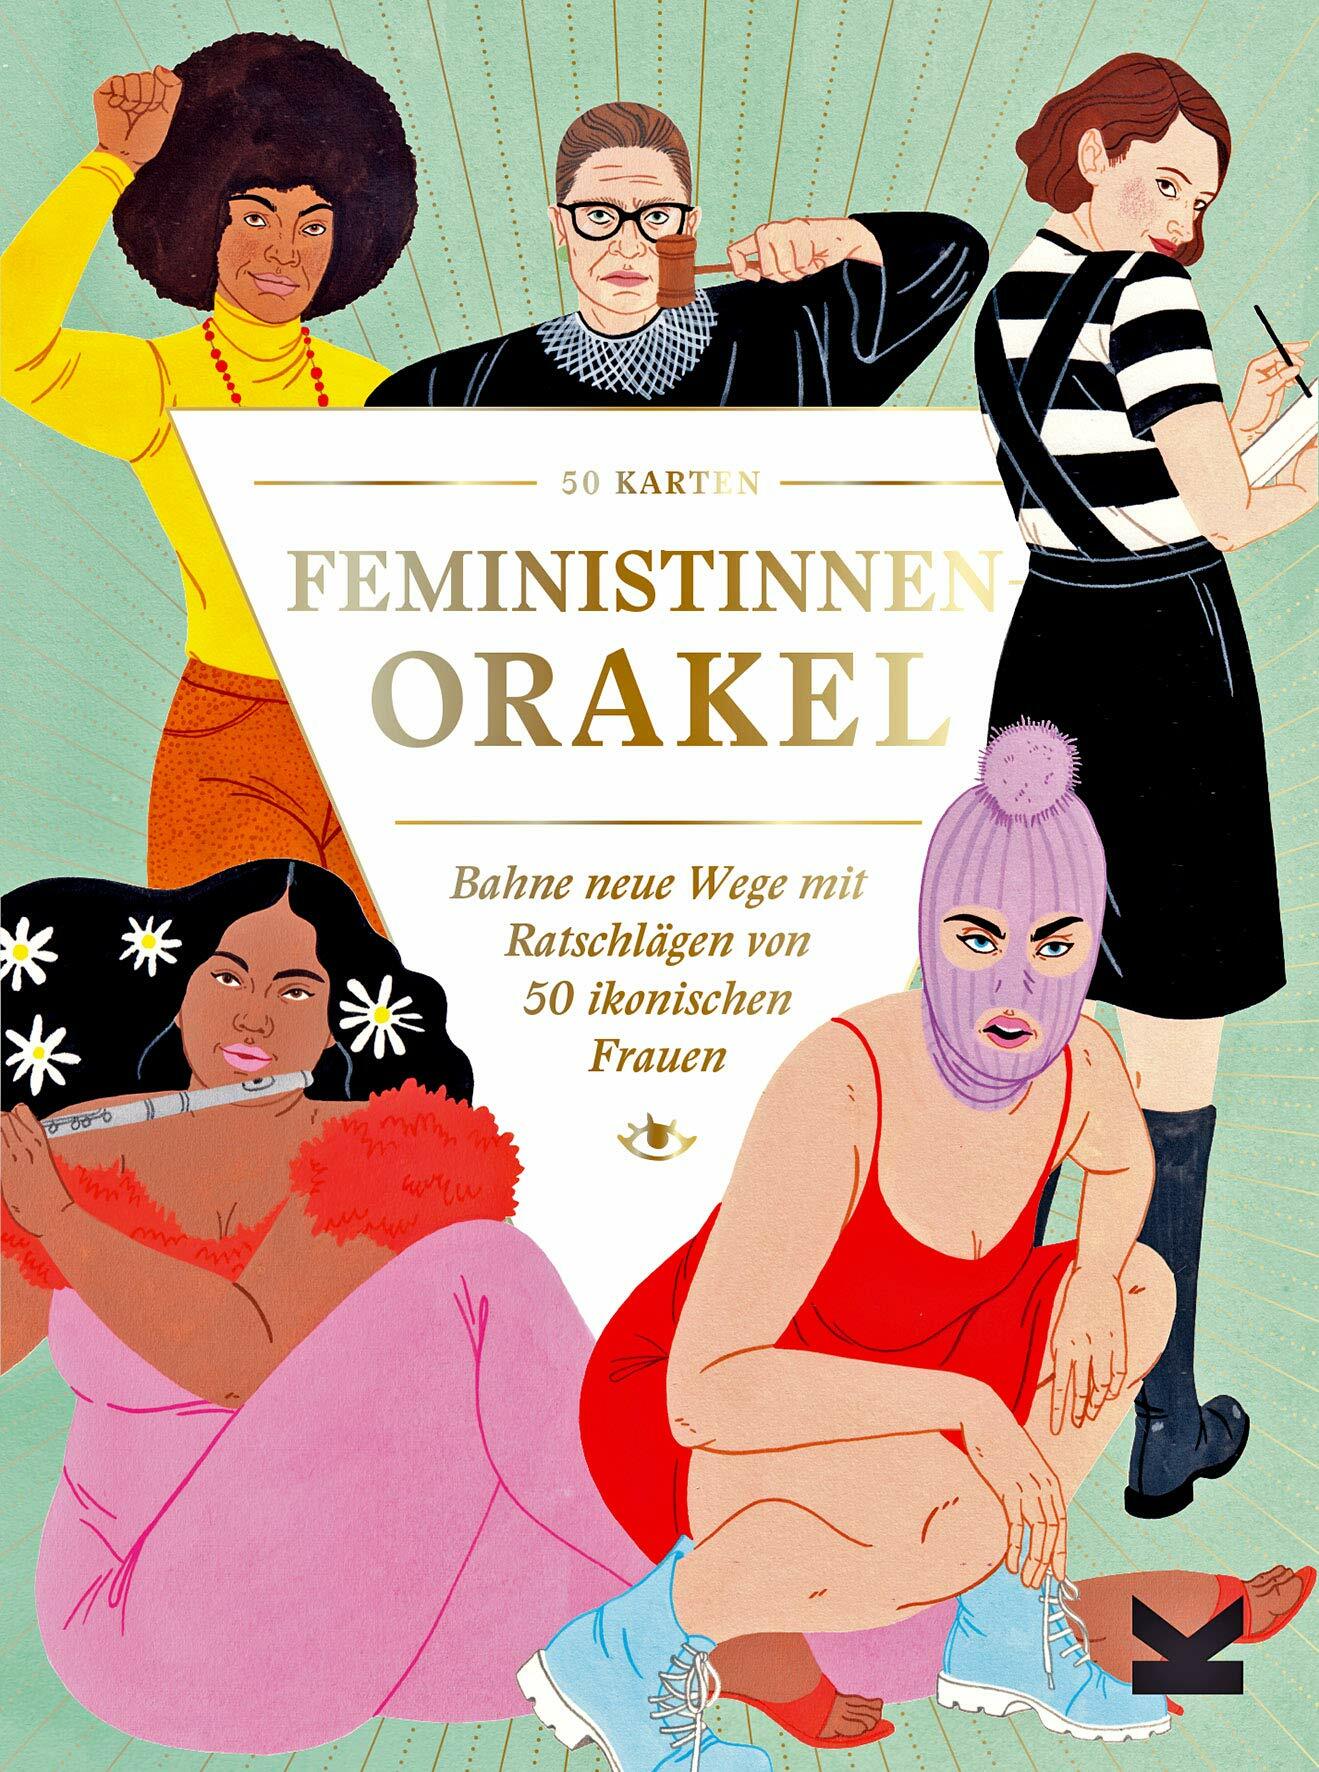 Feministinnen-Orakel (General Merchandise)